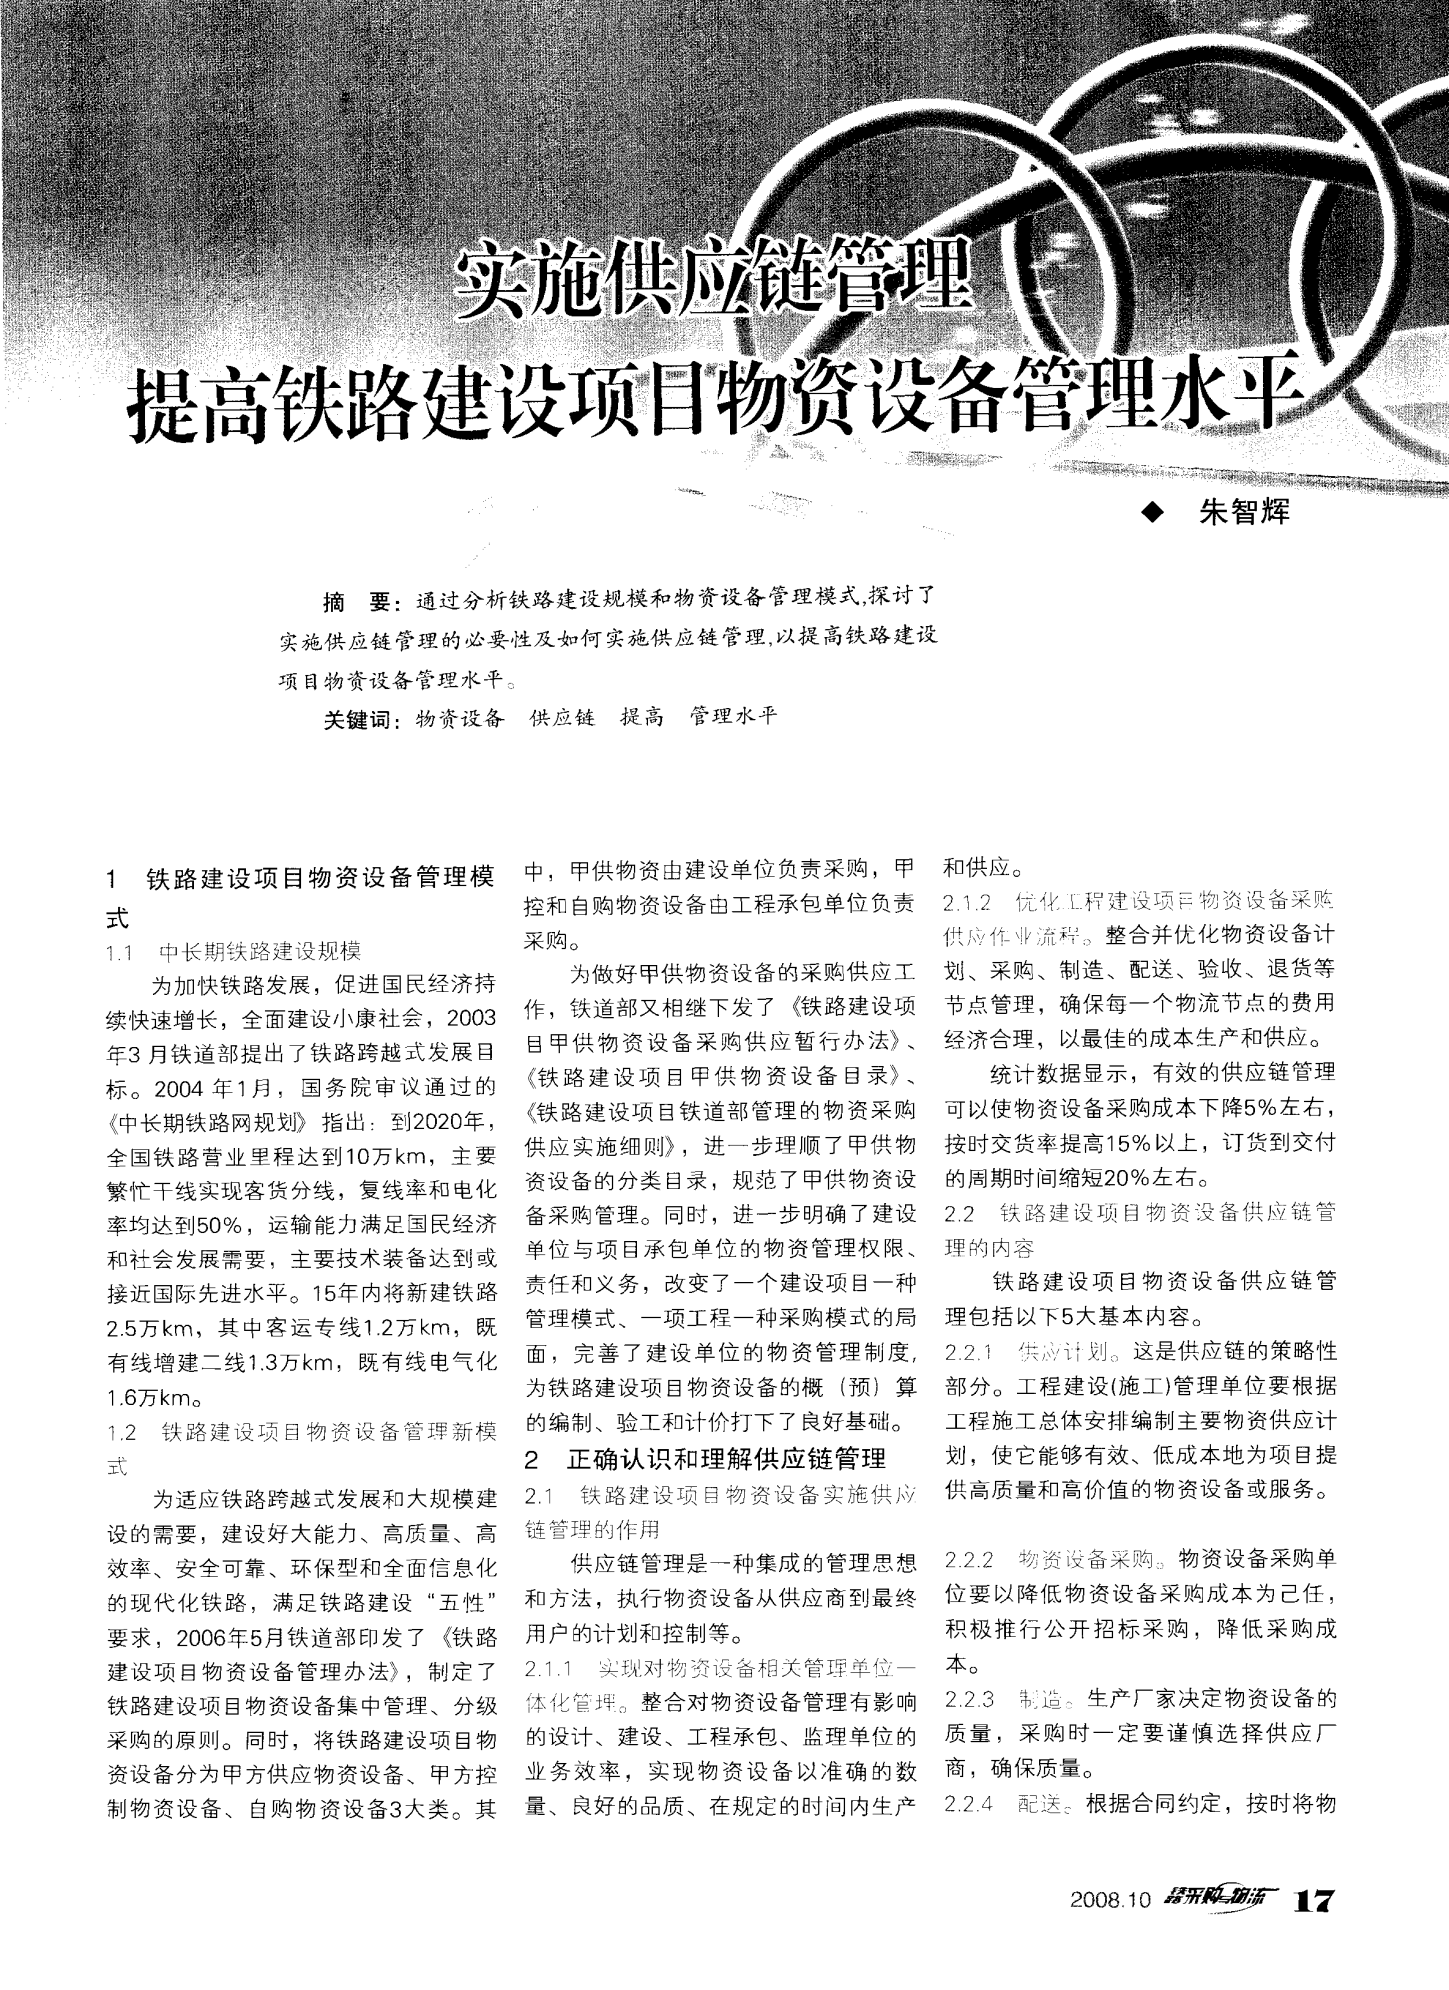 宋玉OB欧宝芳中国钢铁材料战略转型文档5页